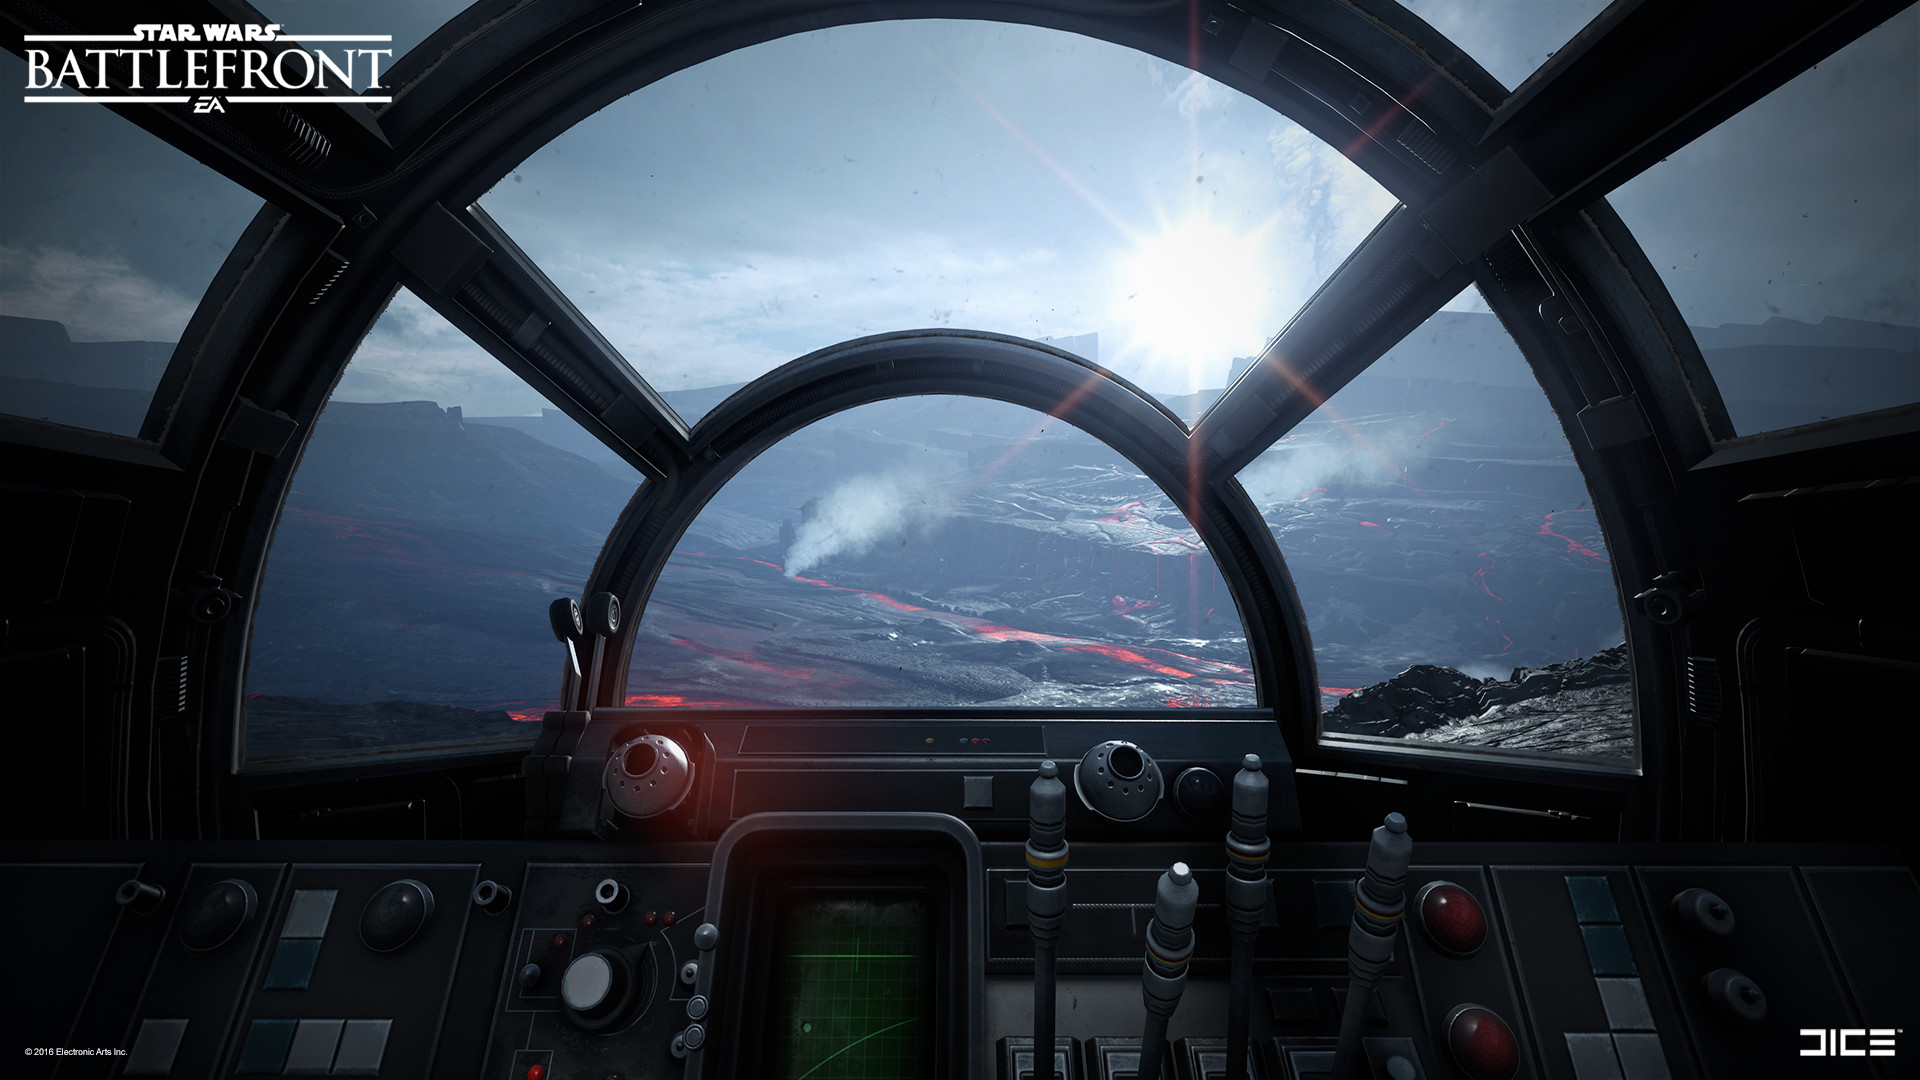 Artstation 2015 Star Wars Battlefront Vehicle Cockpit